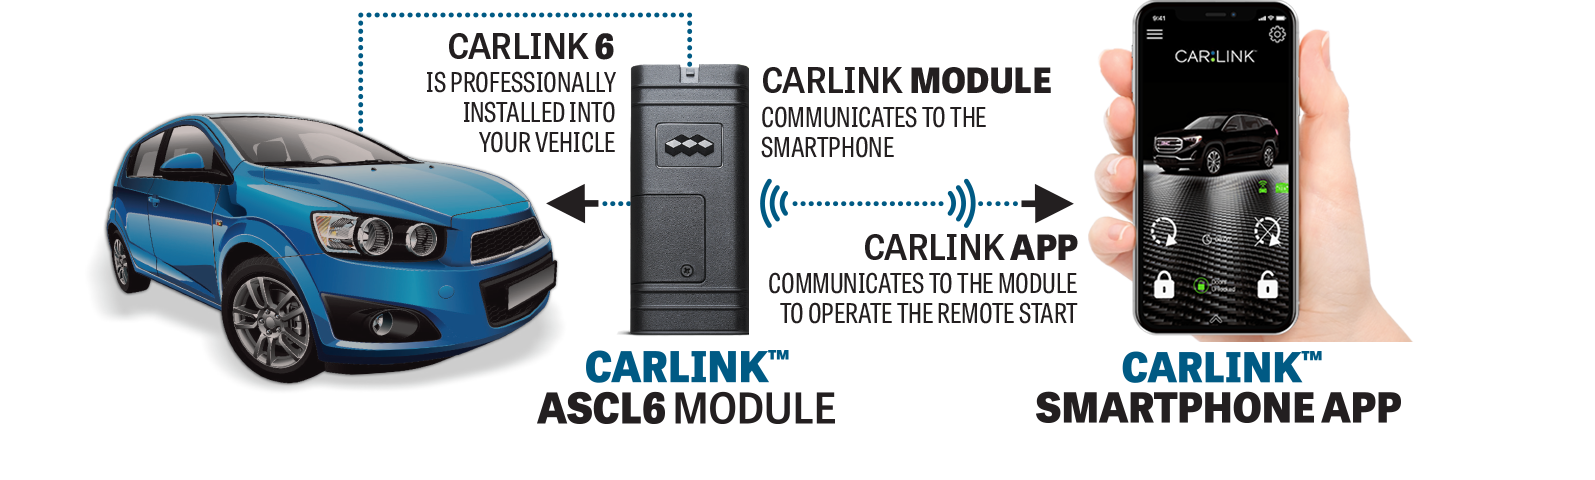 CarLink ASCL6 Telematics Module